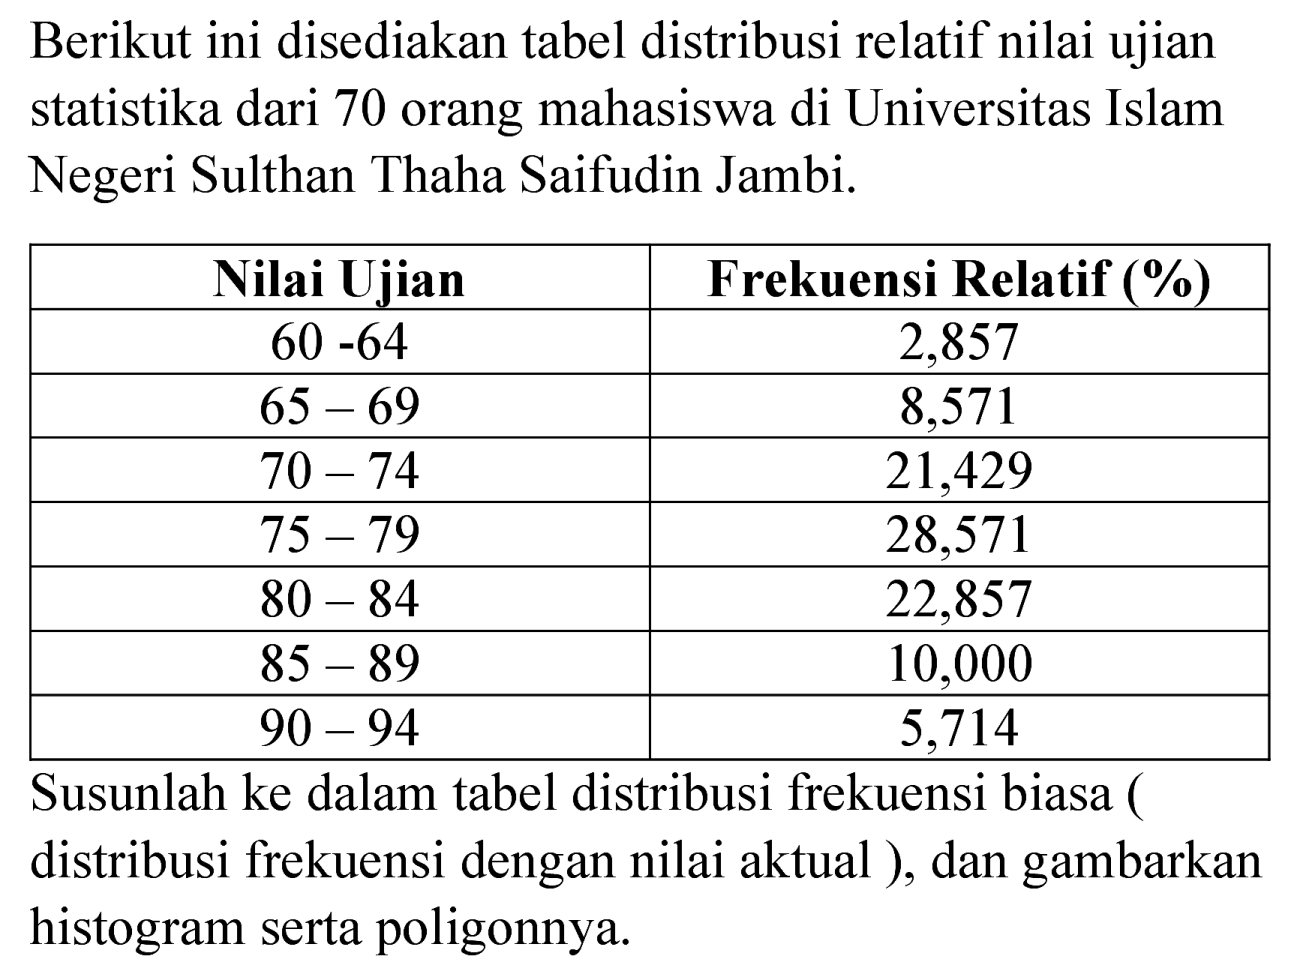 Berikut ini disediakan tabel distribusi relatif nilai ujian statistika dari 70 orang mahasiswa di Universitas Islam Negeri Sulthan Thaha Saifudin Jambi.

 Nilai Ujian  Frekuensi Relatif (%) 
  60-64   2,857 
  65-69   8,571 
  70-74   21,429 
  75-79   28,571 
  80-84   22,857 
  85-89   10,000 
  90-94   5,714 


Susunlah ke dalam tabel distribusi frekuensi biasa ( distribusi frekuensi dengan nilai aktual ), dan gambarkan histogram serta poligonnya.